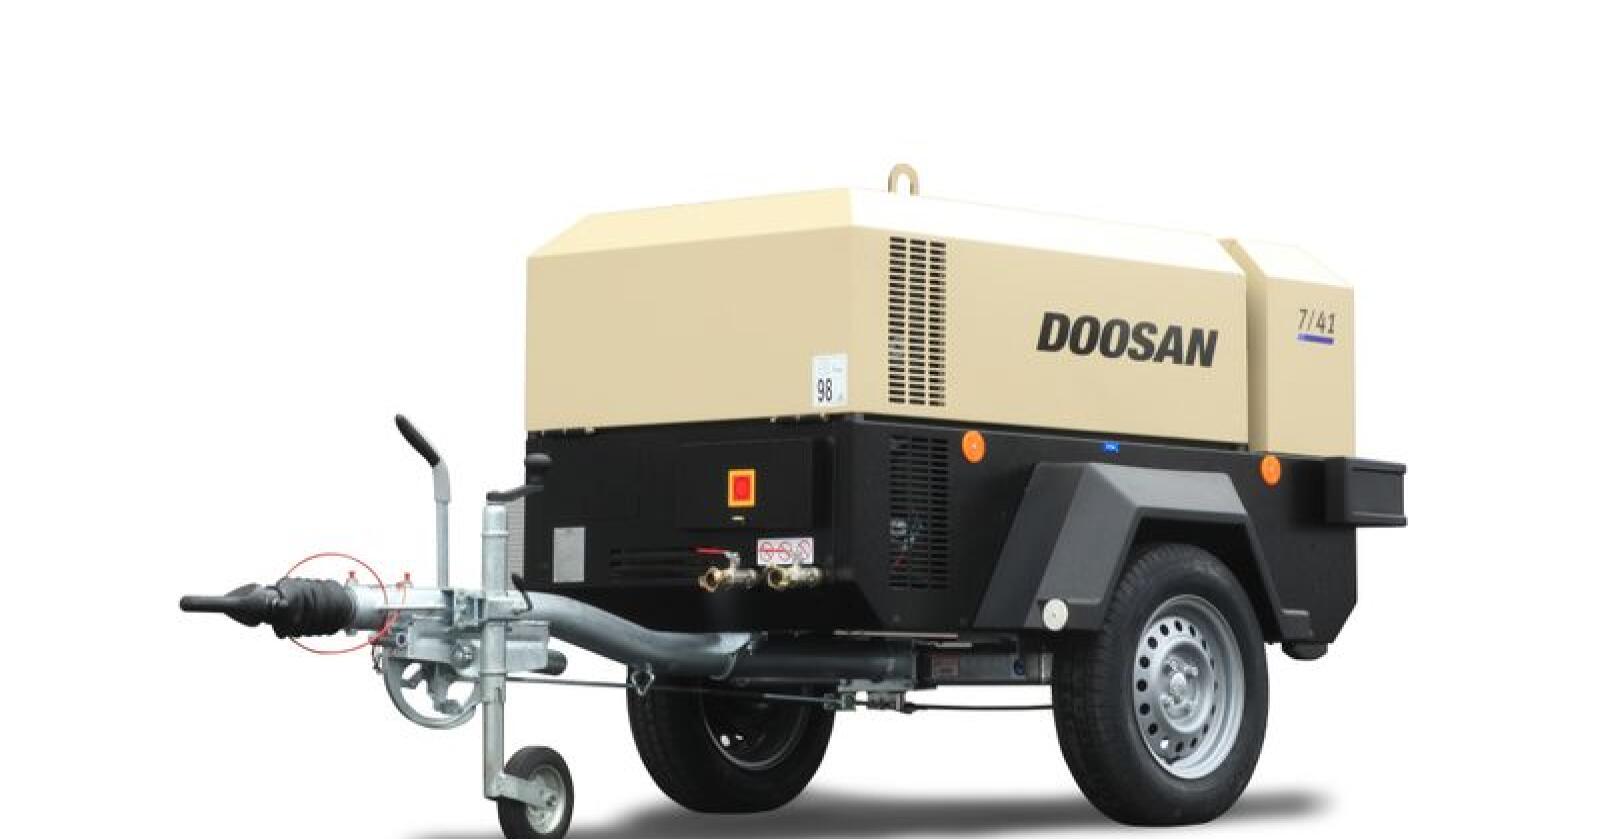 Doosans lavtrykkskompressorer kan leveres med arbeidtrykk fra 7-17 bar. (Foto: produsenten)